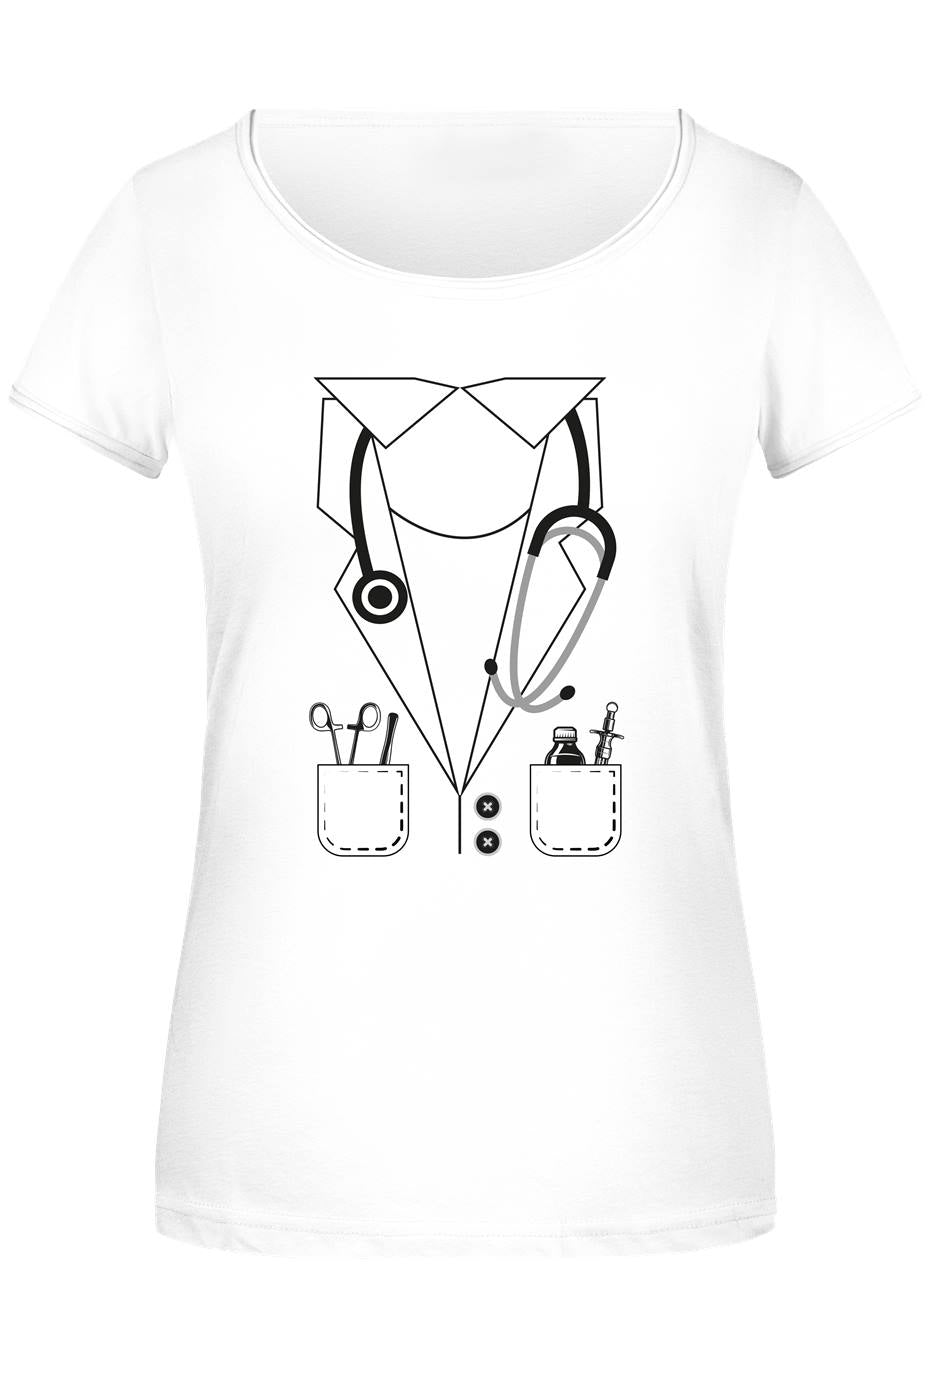 Bild: T-Shirt Damen - Ärztin Kostüm (Motiv) Geschenkidee